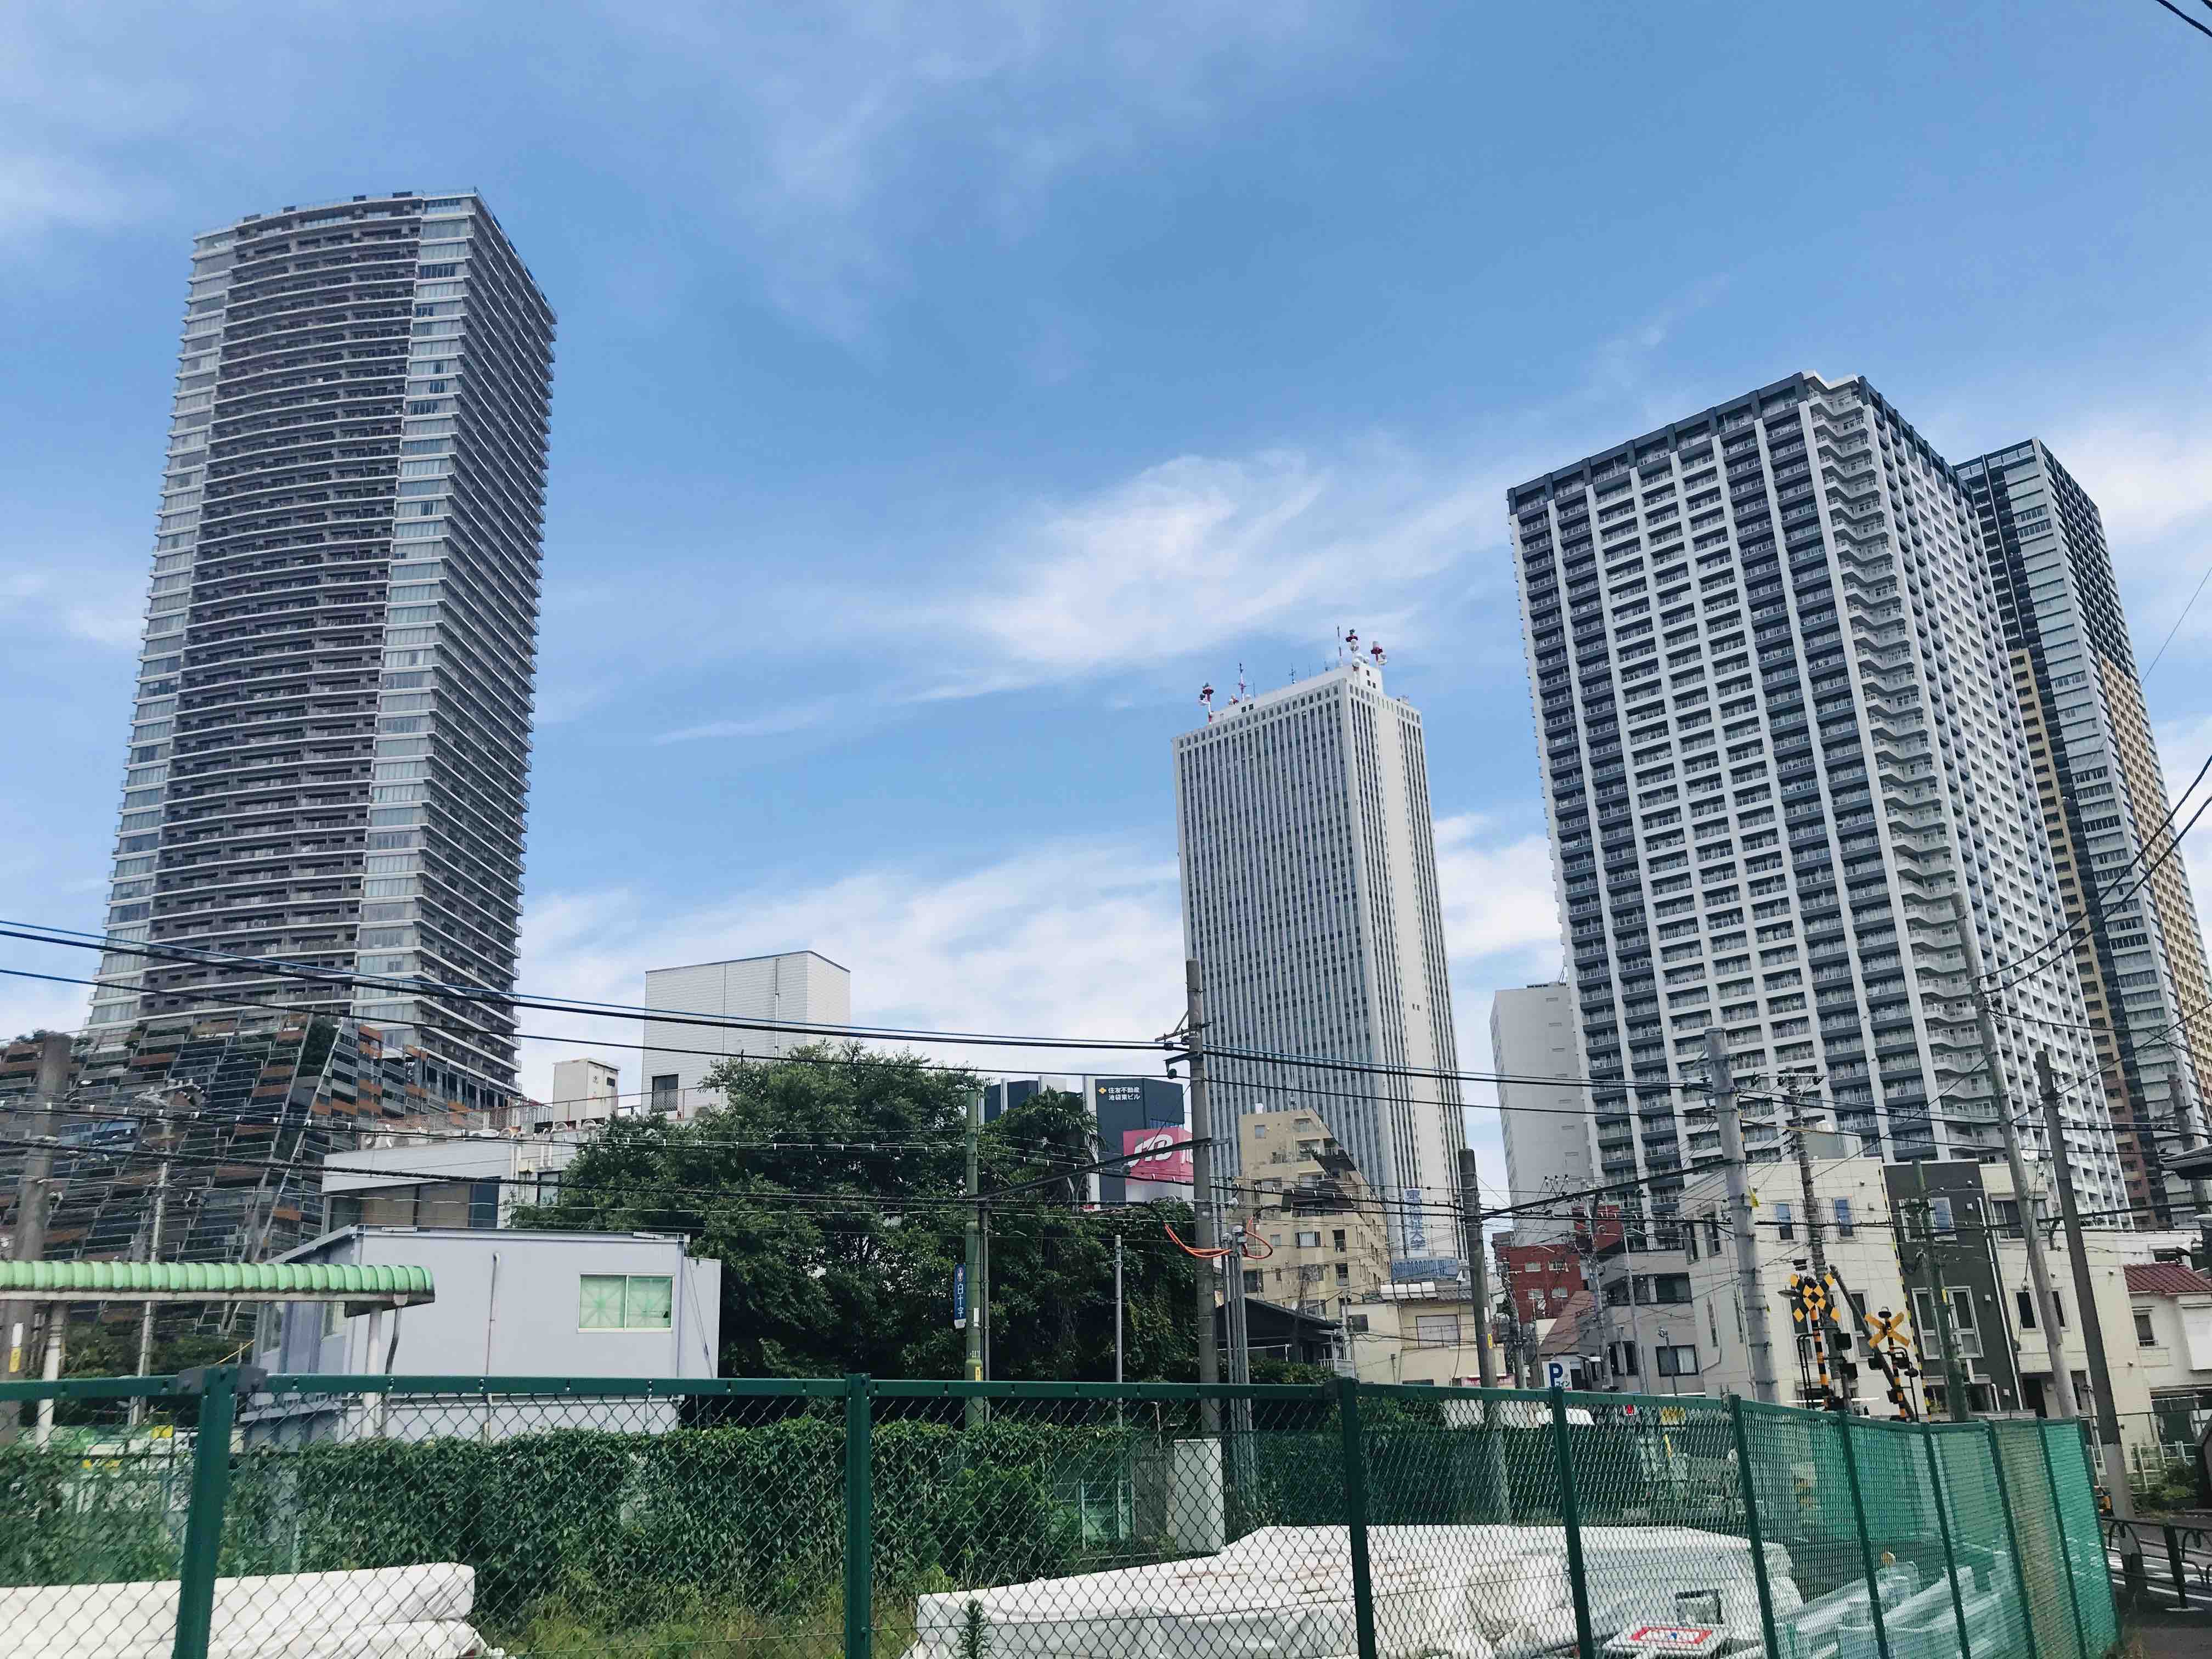 左が豊島区役所（49階）のある豊島エコミューザタウン。中央が池袋サンシャイン（60階）右が東池袋駅直結のエアライズタワー（42階） 写真手前側の敷地で大規模な再開発が予定されている。（南池袋２丁目再開発予定地、2020年6月撮影） 